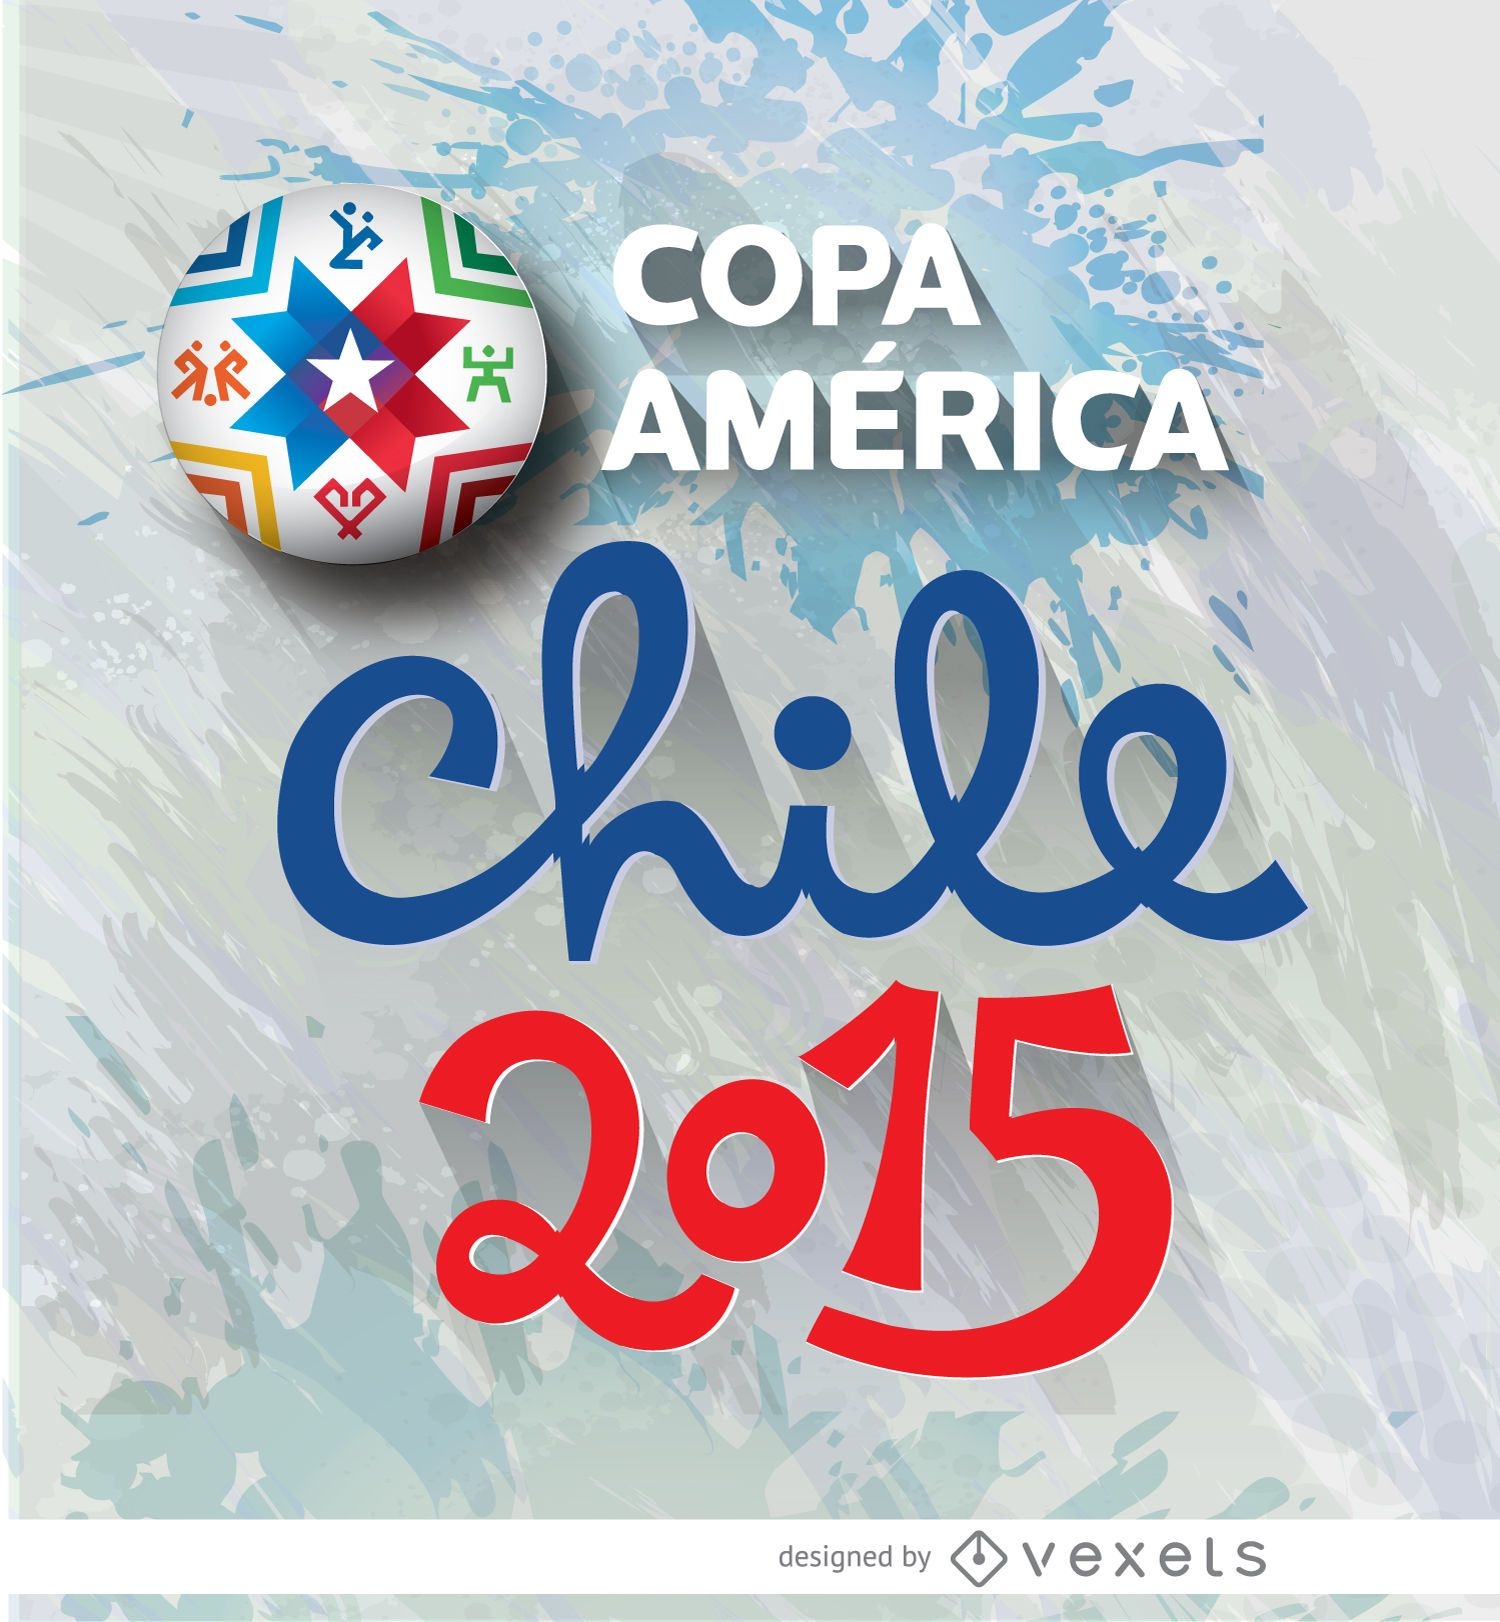 Logotipo da Copa América Chile